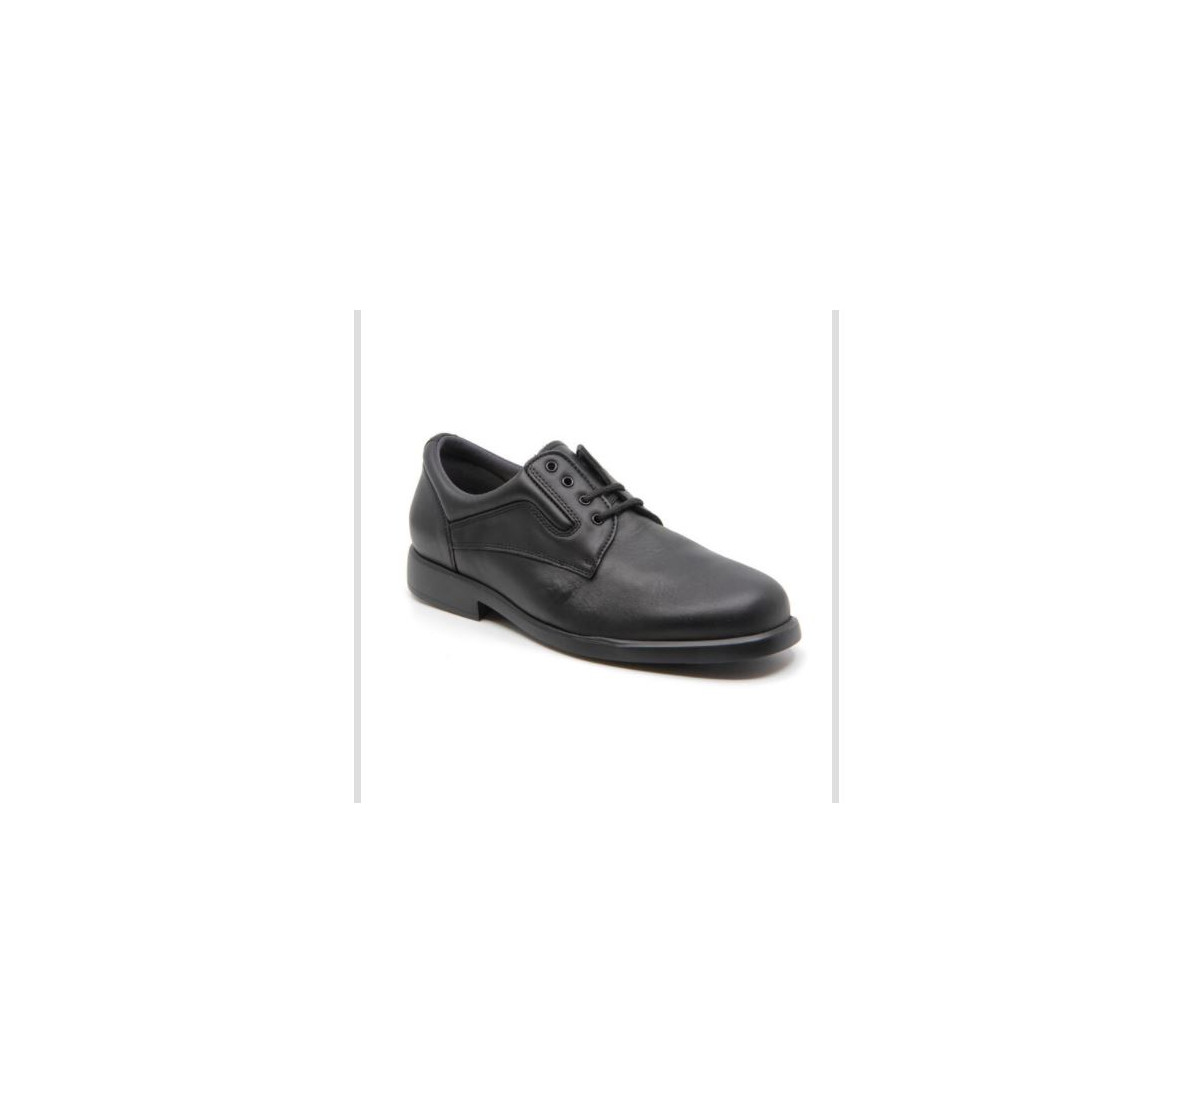 Chaussures confort ultra légères en cuir à lacets - Noir - Mabel Shoes